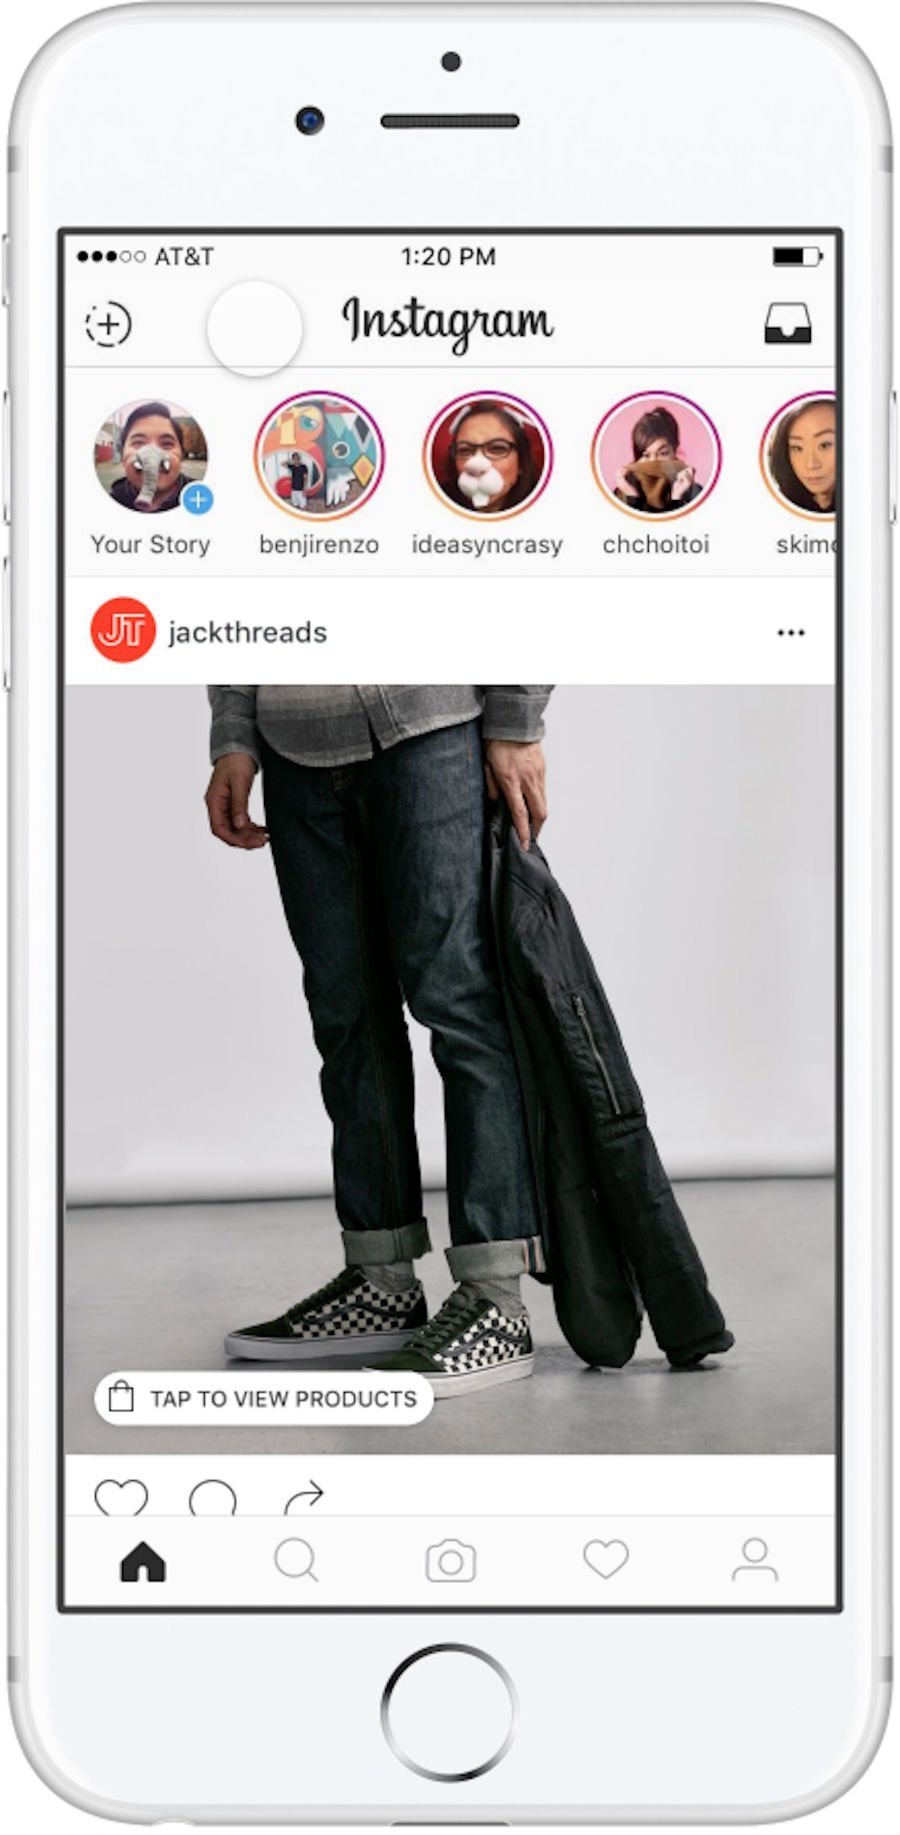 Nova funcionalidade do Instagram: tela permite comprar e pesquisar produtos que aparecem na foto